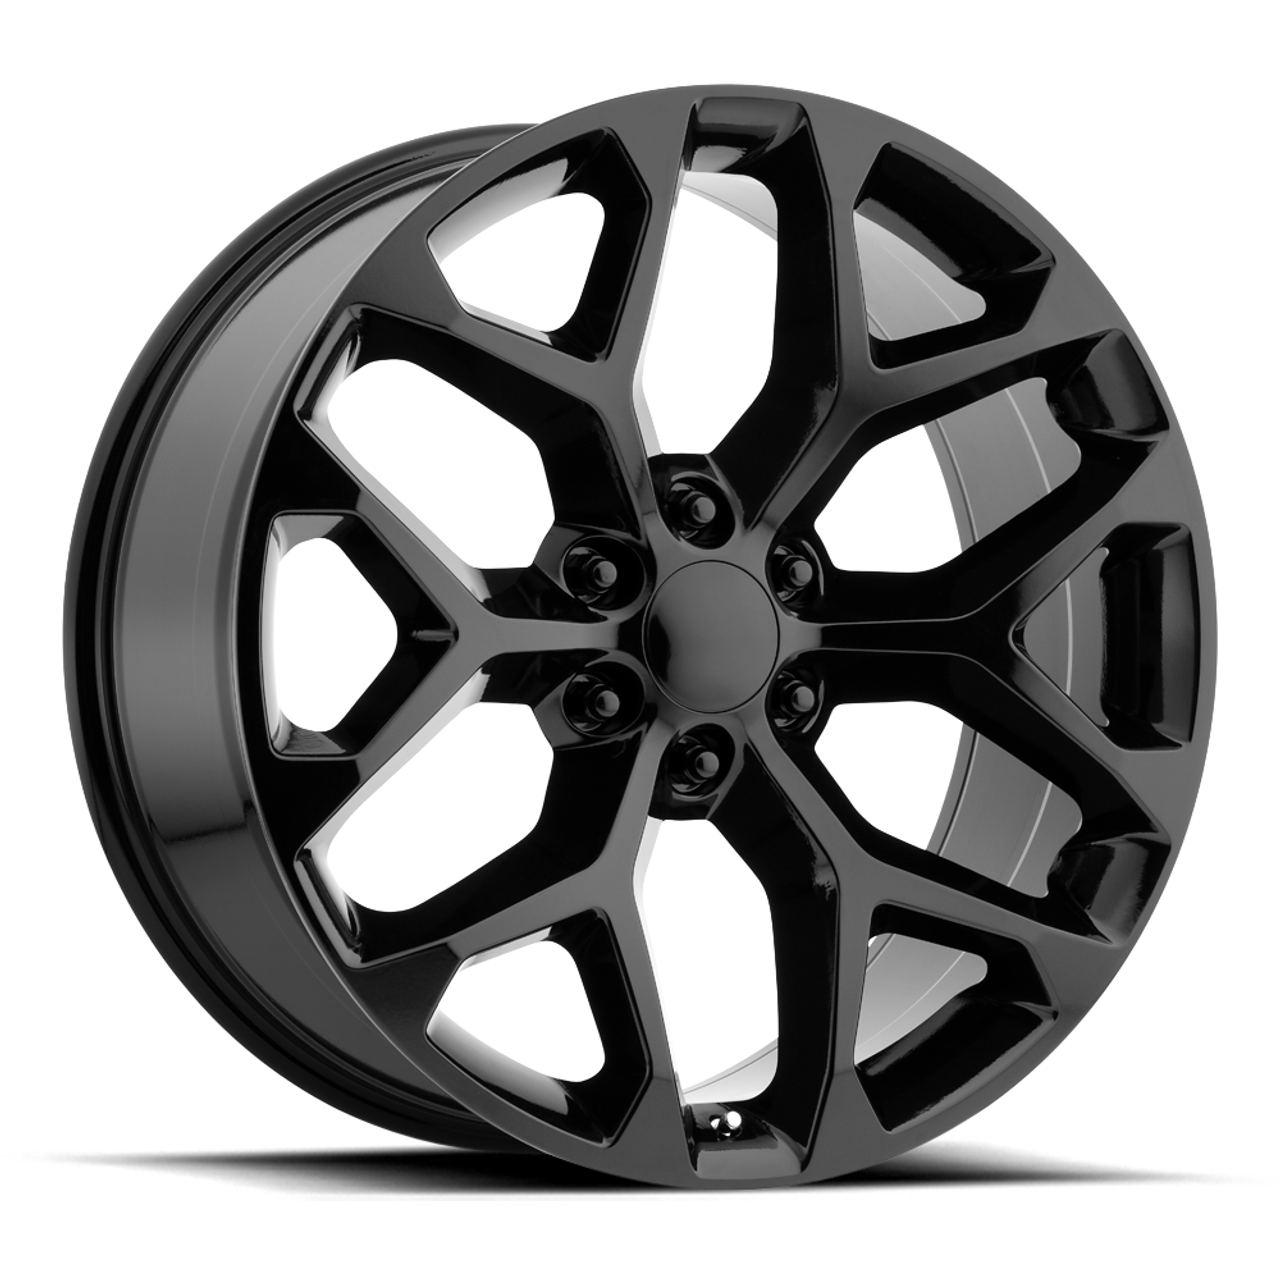 Set 4 Performance Replicas PR176 26x10 6x5.5 Gloss Black Wheels 26" 24mm Rims